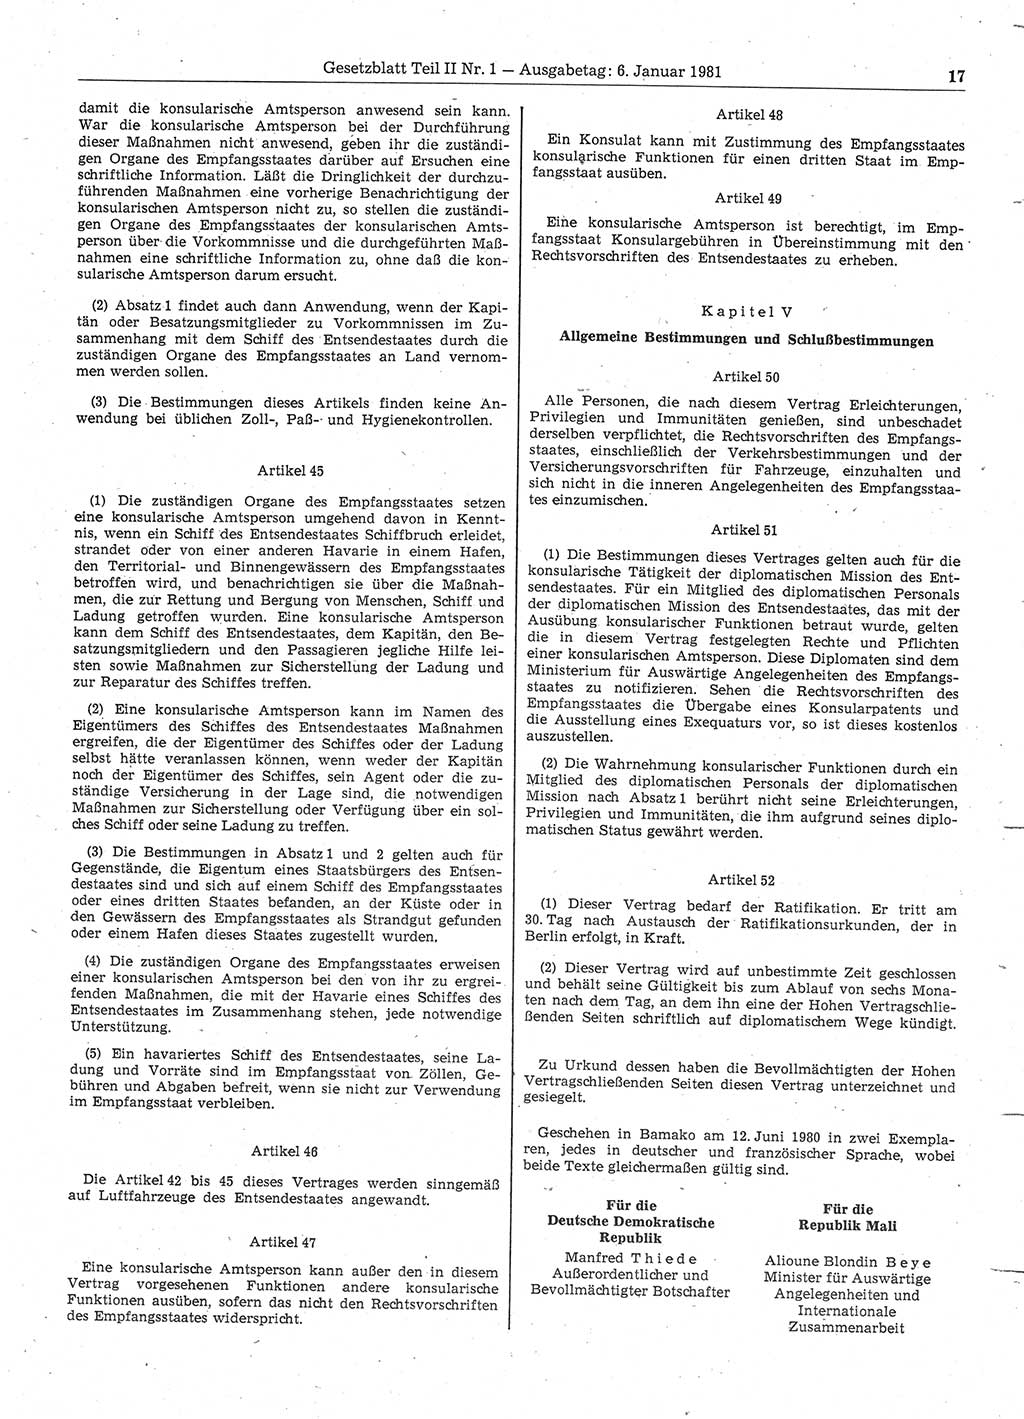 Gesetzblatt (GBl.) der Deutschen Demokratischen Republik (DDR) Teil ⅠⅠ 1981, Seite 17 (GBl. DDR ⅠⅠ 1981, S. 17)